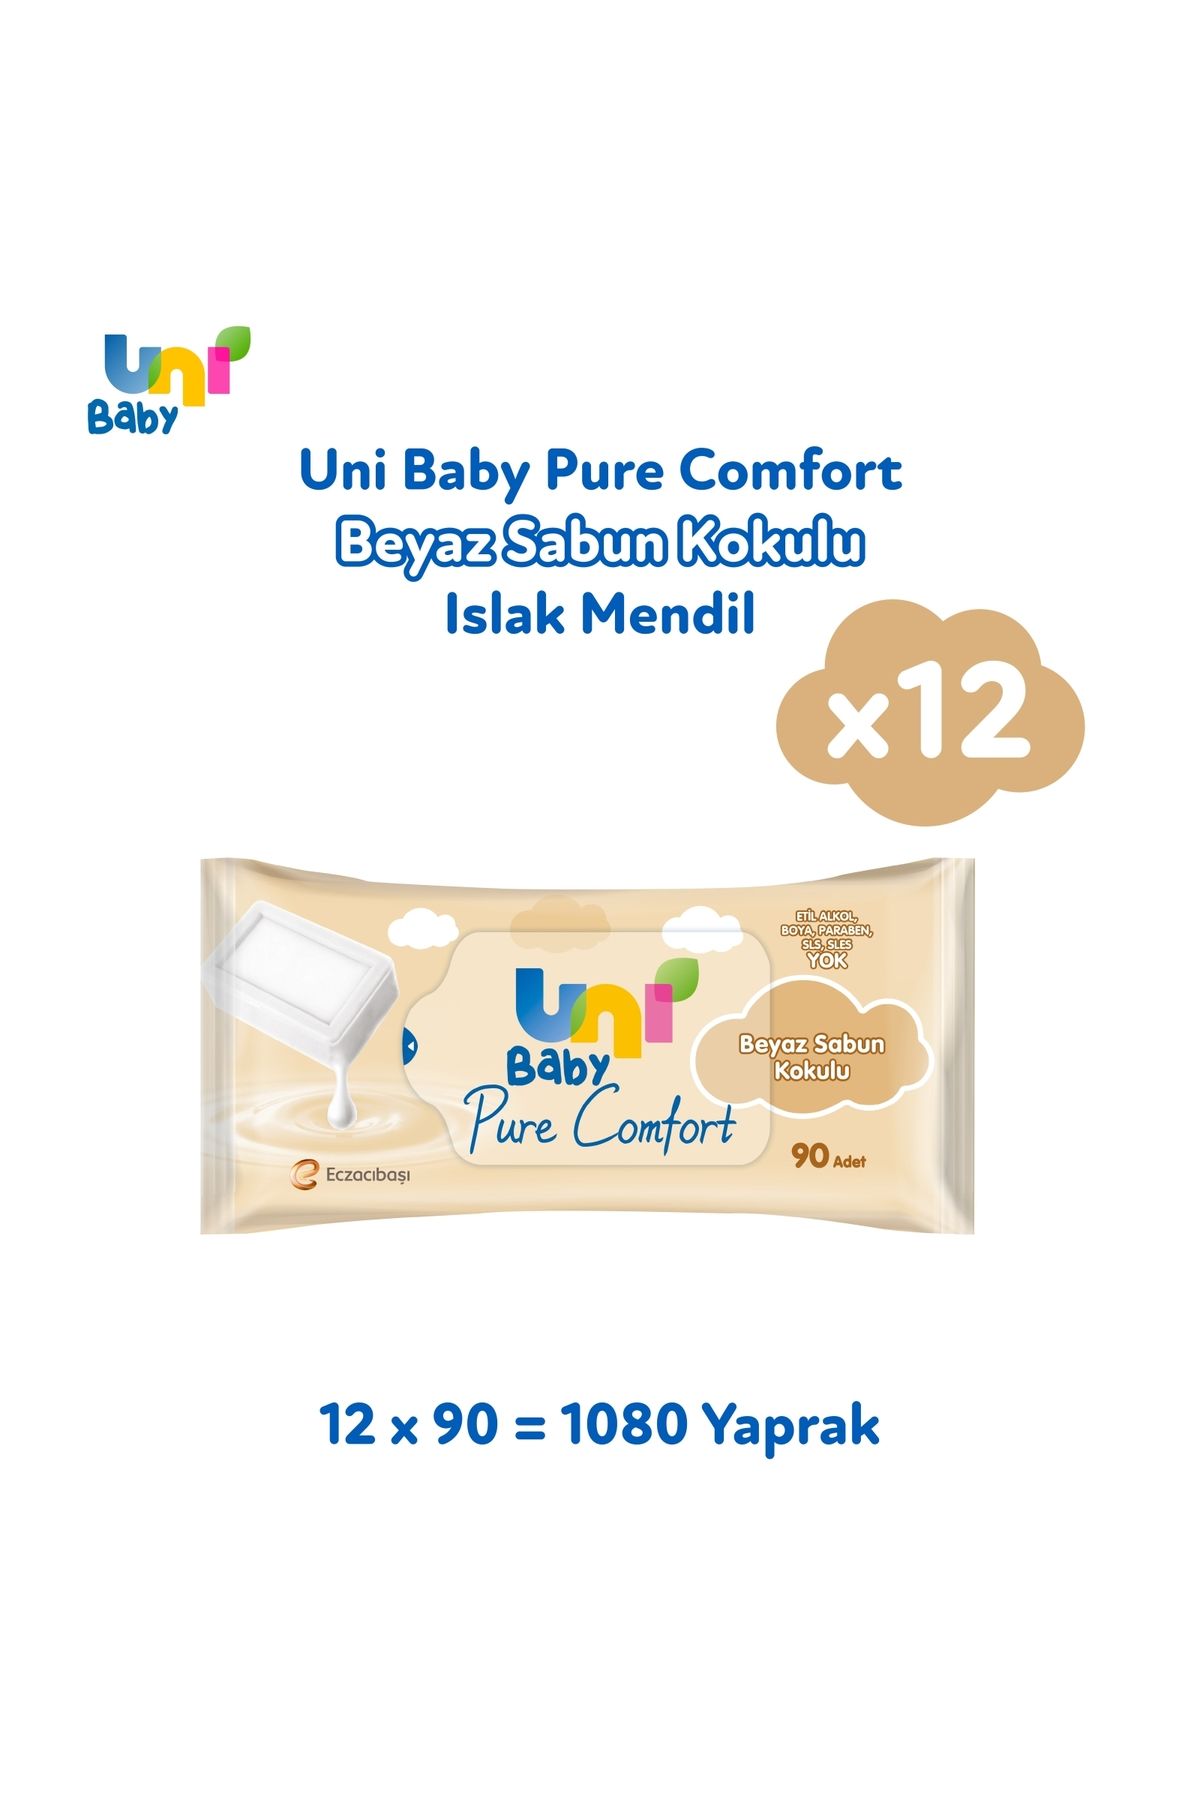 Uni baby Pure Comfort Beyaz Sabun Kokulu Islak Mendil 12'li 1080 Yaprak